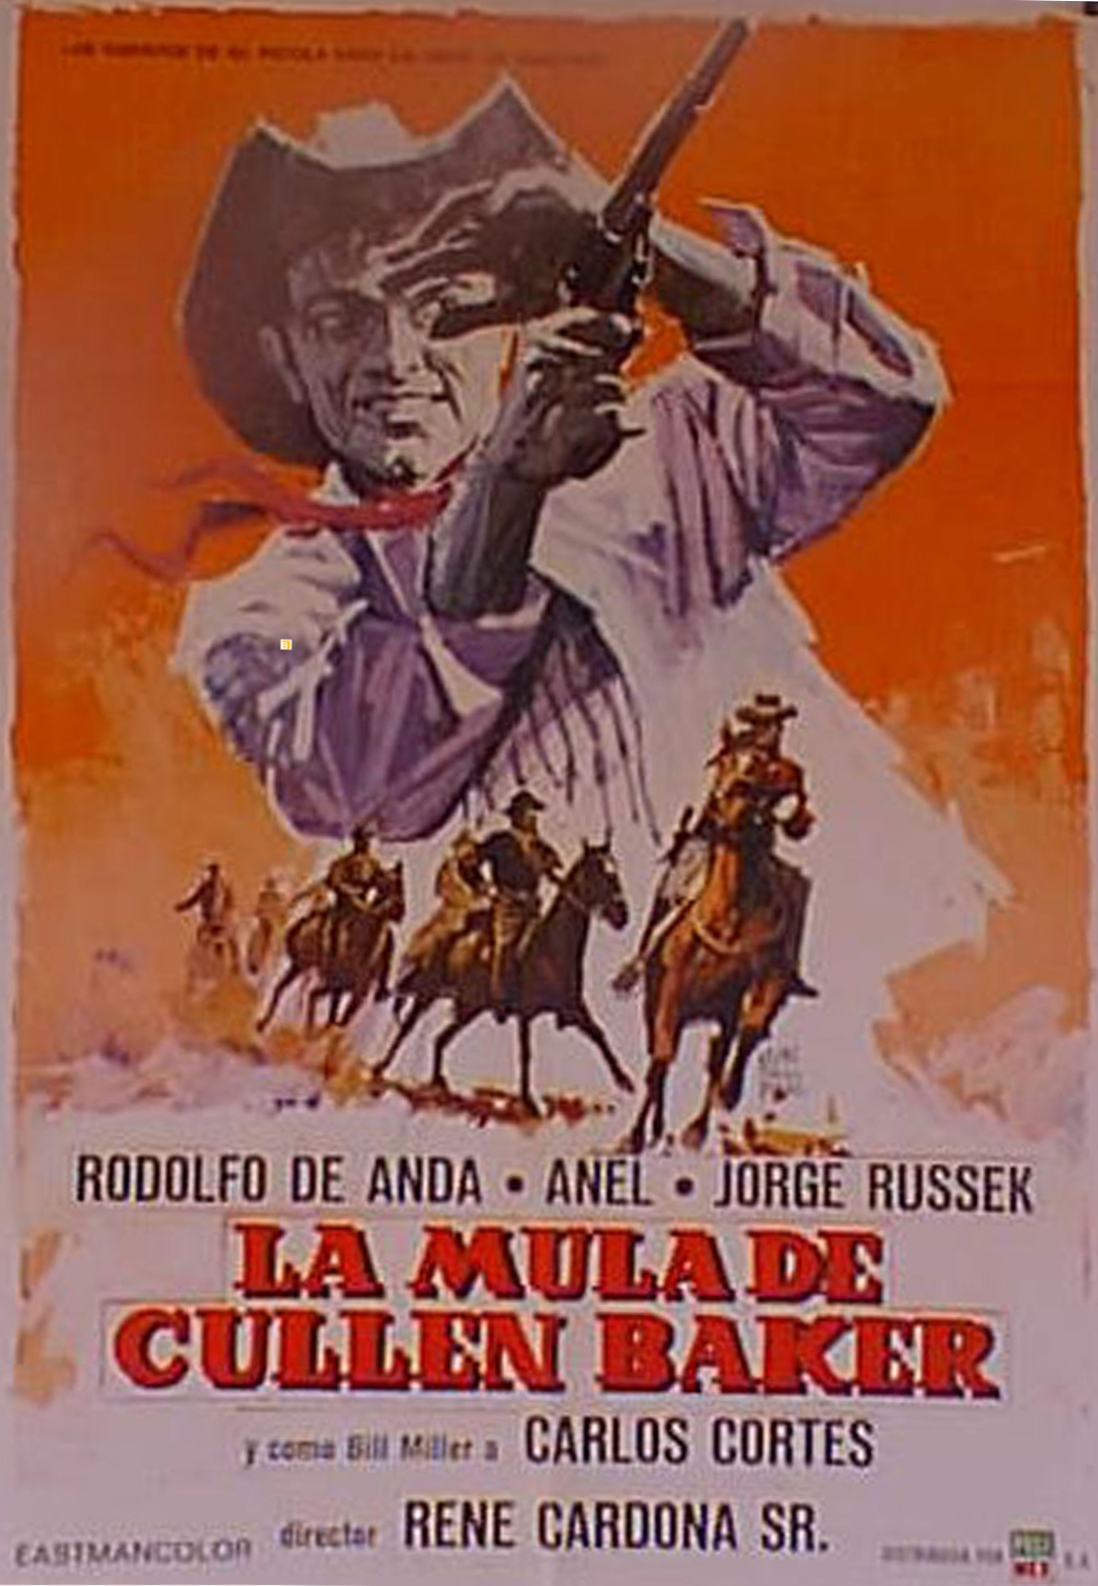 Cullen Baker's Mule movie poster